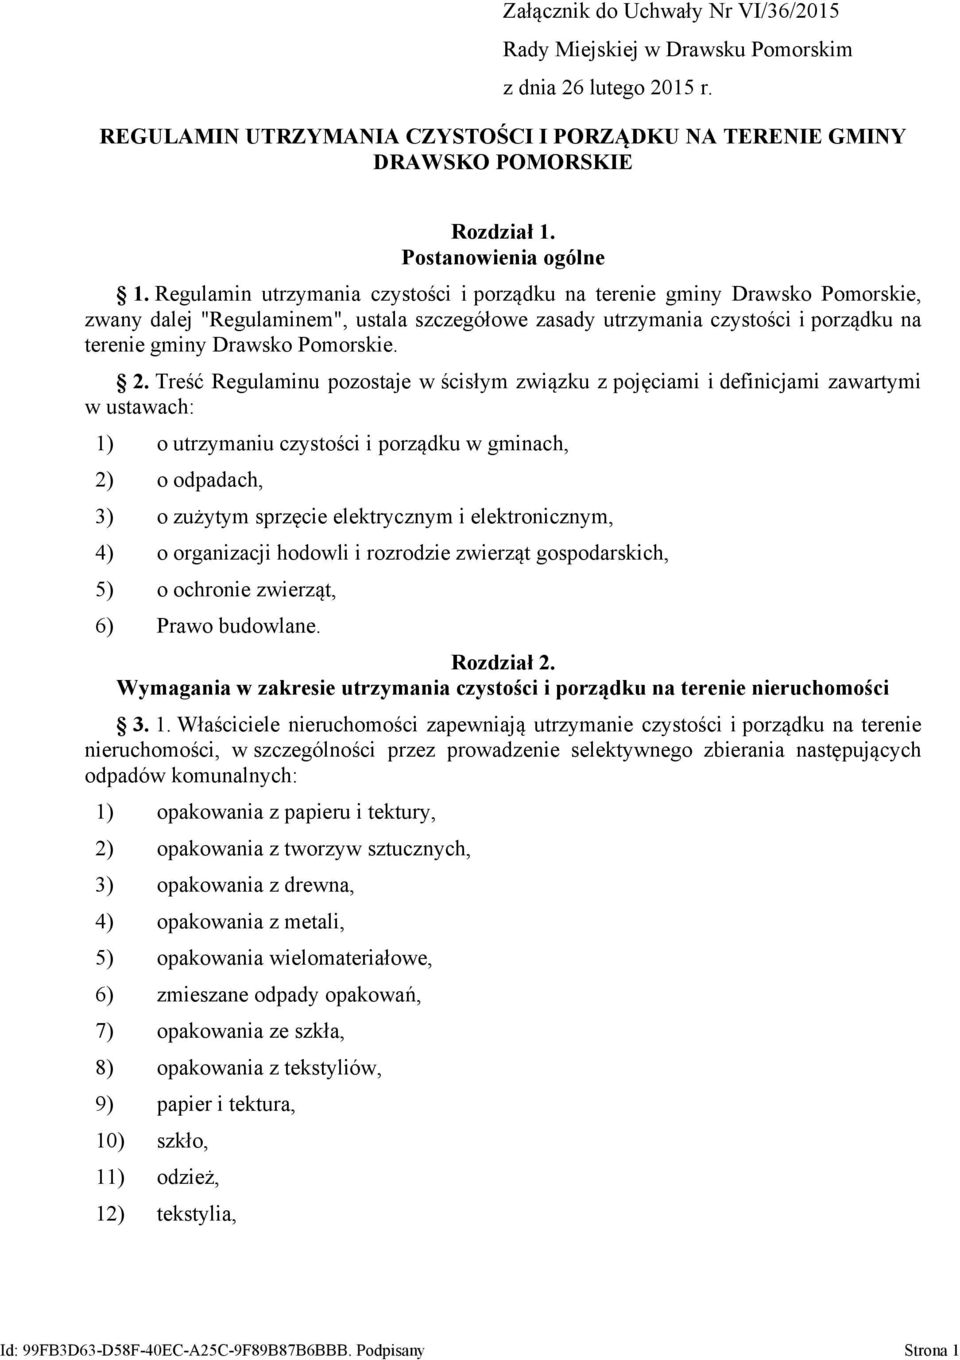 Regulamin utrzymania czystości i porządku na terenie gminy Drawsko Pomorskie, zwany dalej "Regulaminem", ustala szczegółowe zasady utrzymania czystości i porządku na terenie gminy Drawsko Pomorskie.